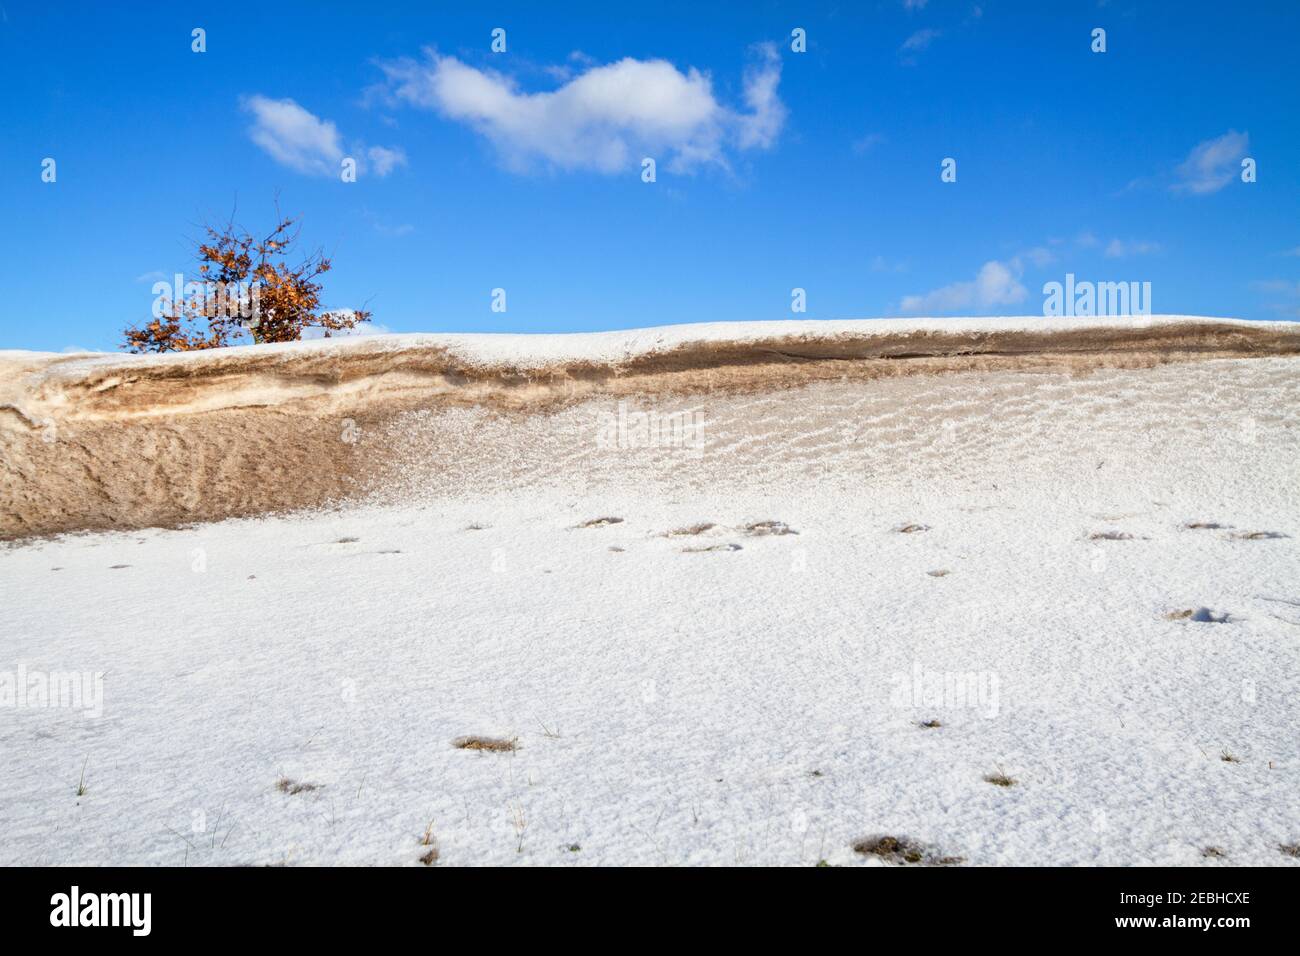 Schneewehe, eine Schneeablagerung und etwas Sand, der während eines Schneesturms vom Wind in einen Hügel geformt wurde Stockfoto